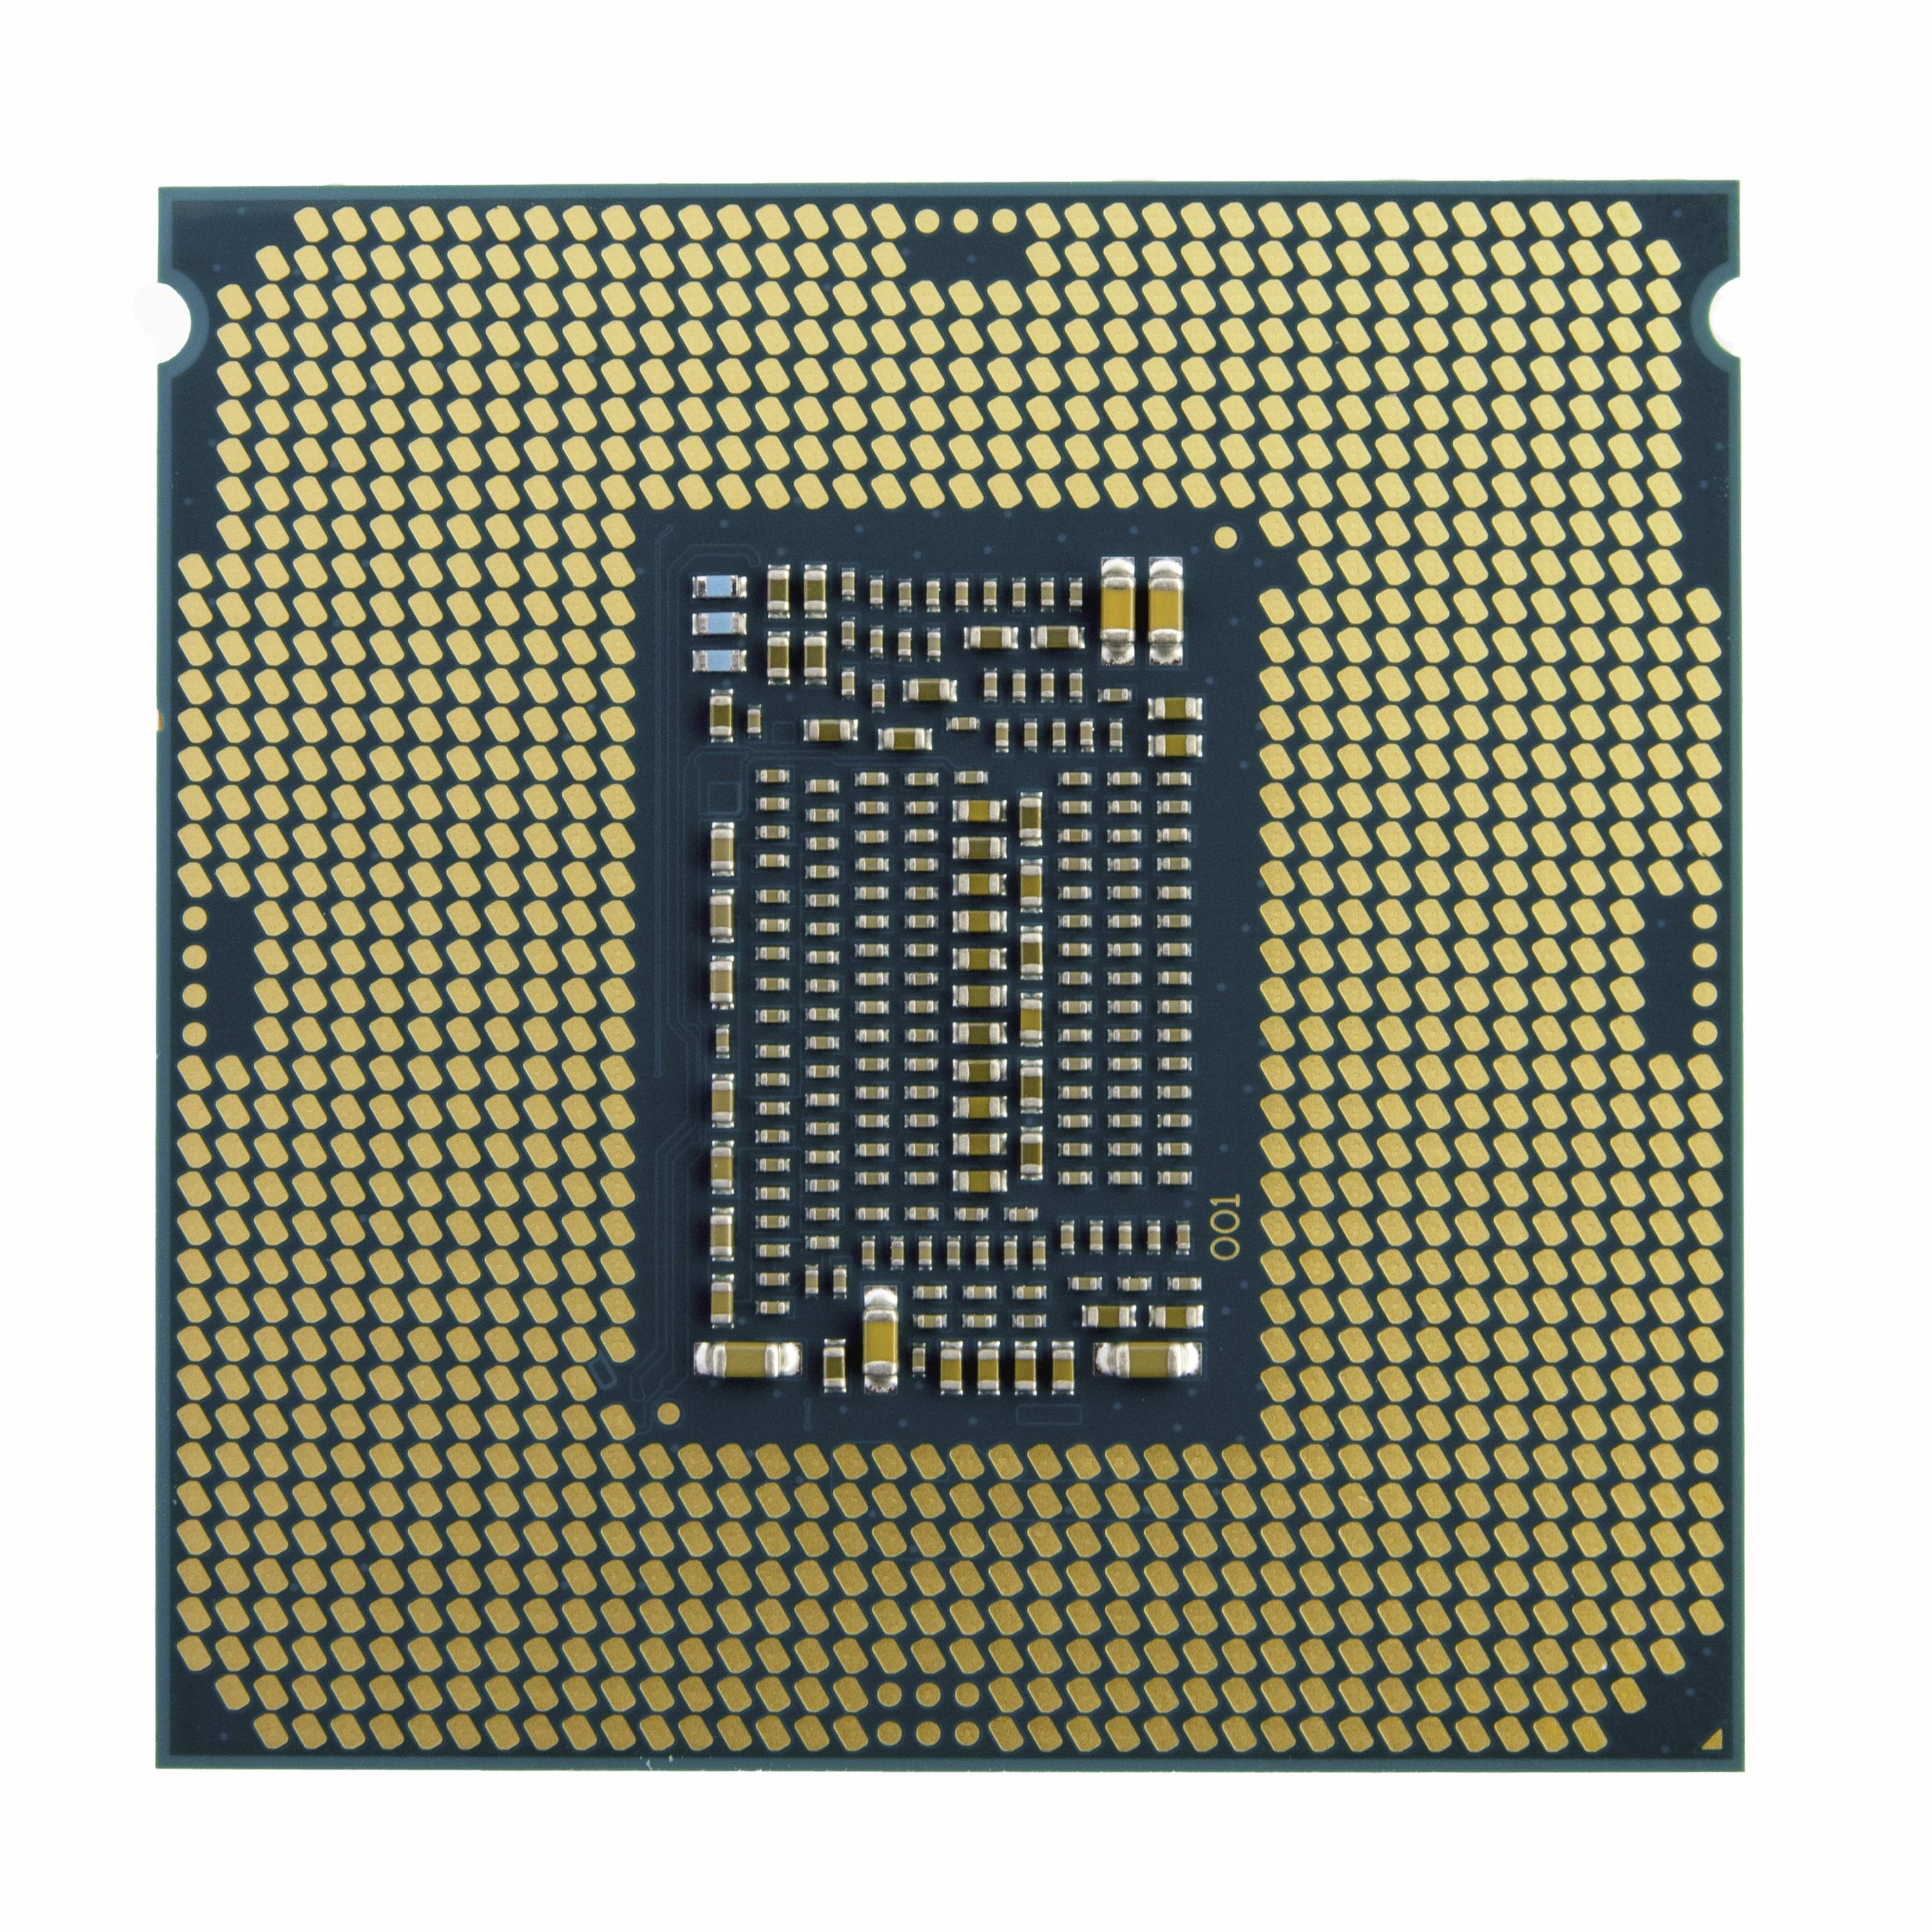 Intel CPU Core i9 I9-10900KF 3,7 GHz 10-kärnig LGA1200